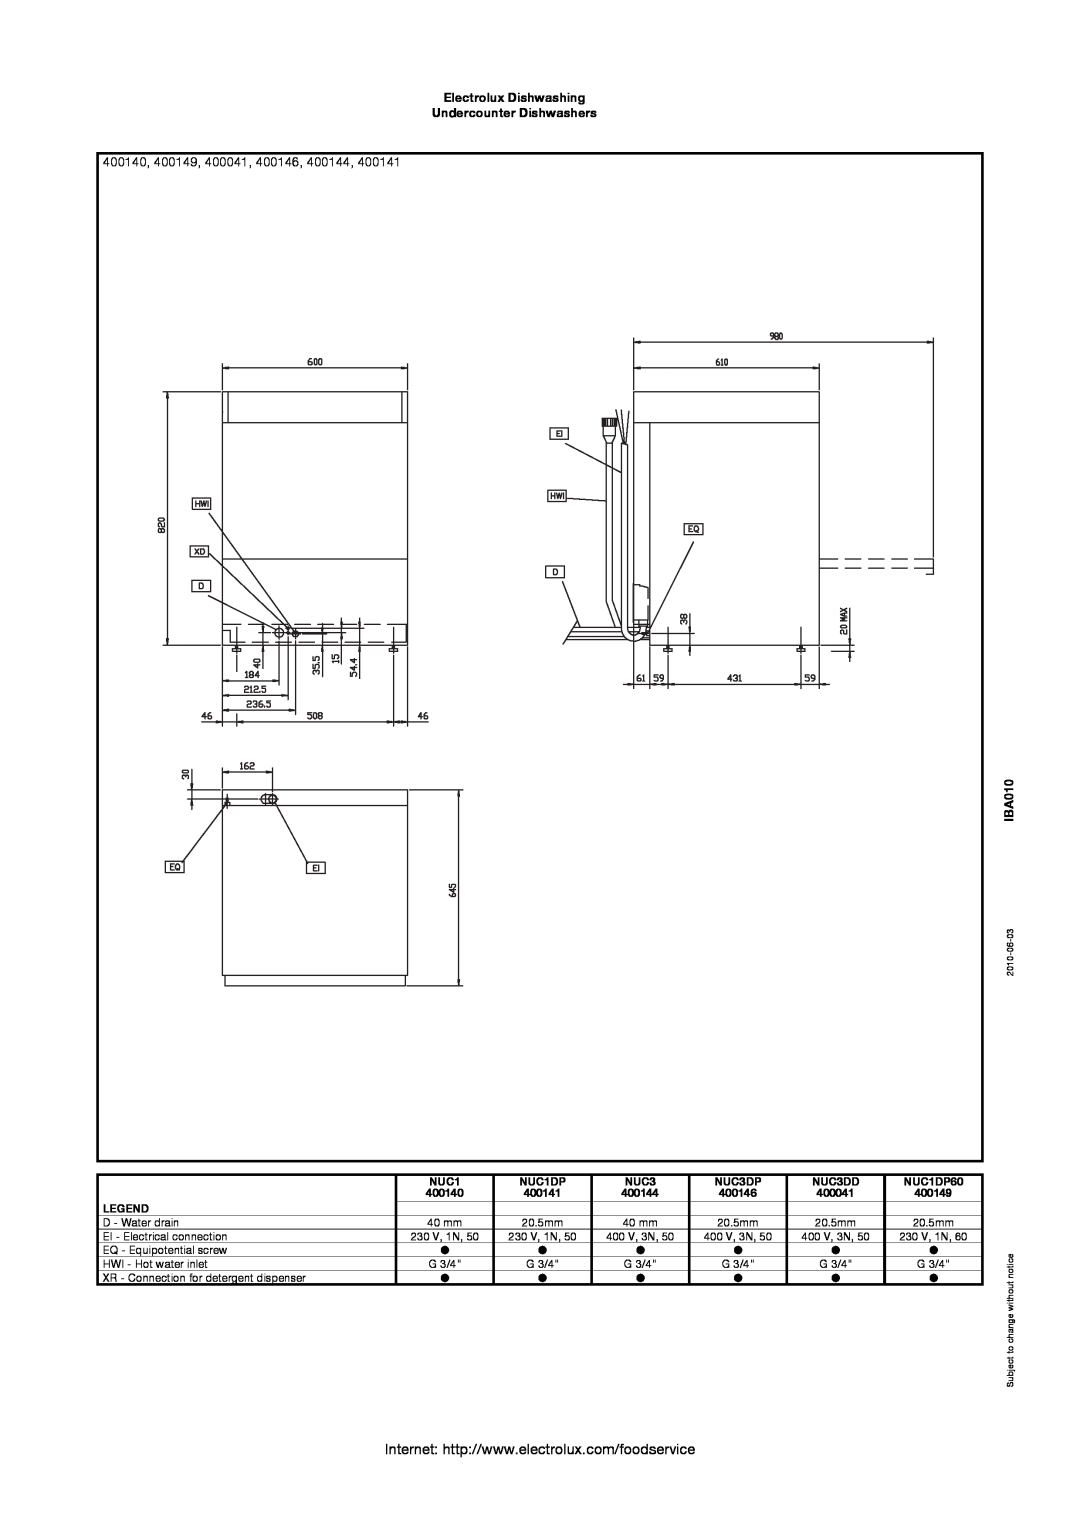 Electrolux 400140, 400149, 400041, 400146, 400144, Electrolux Dishwashing Undercounter Dishwashers, IBA010, 2010-06-03 